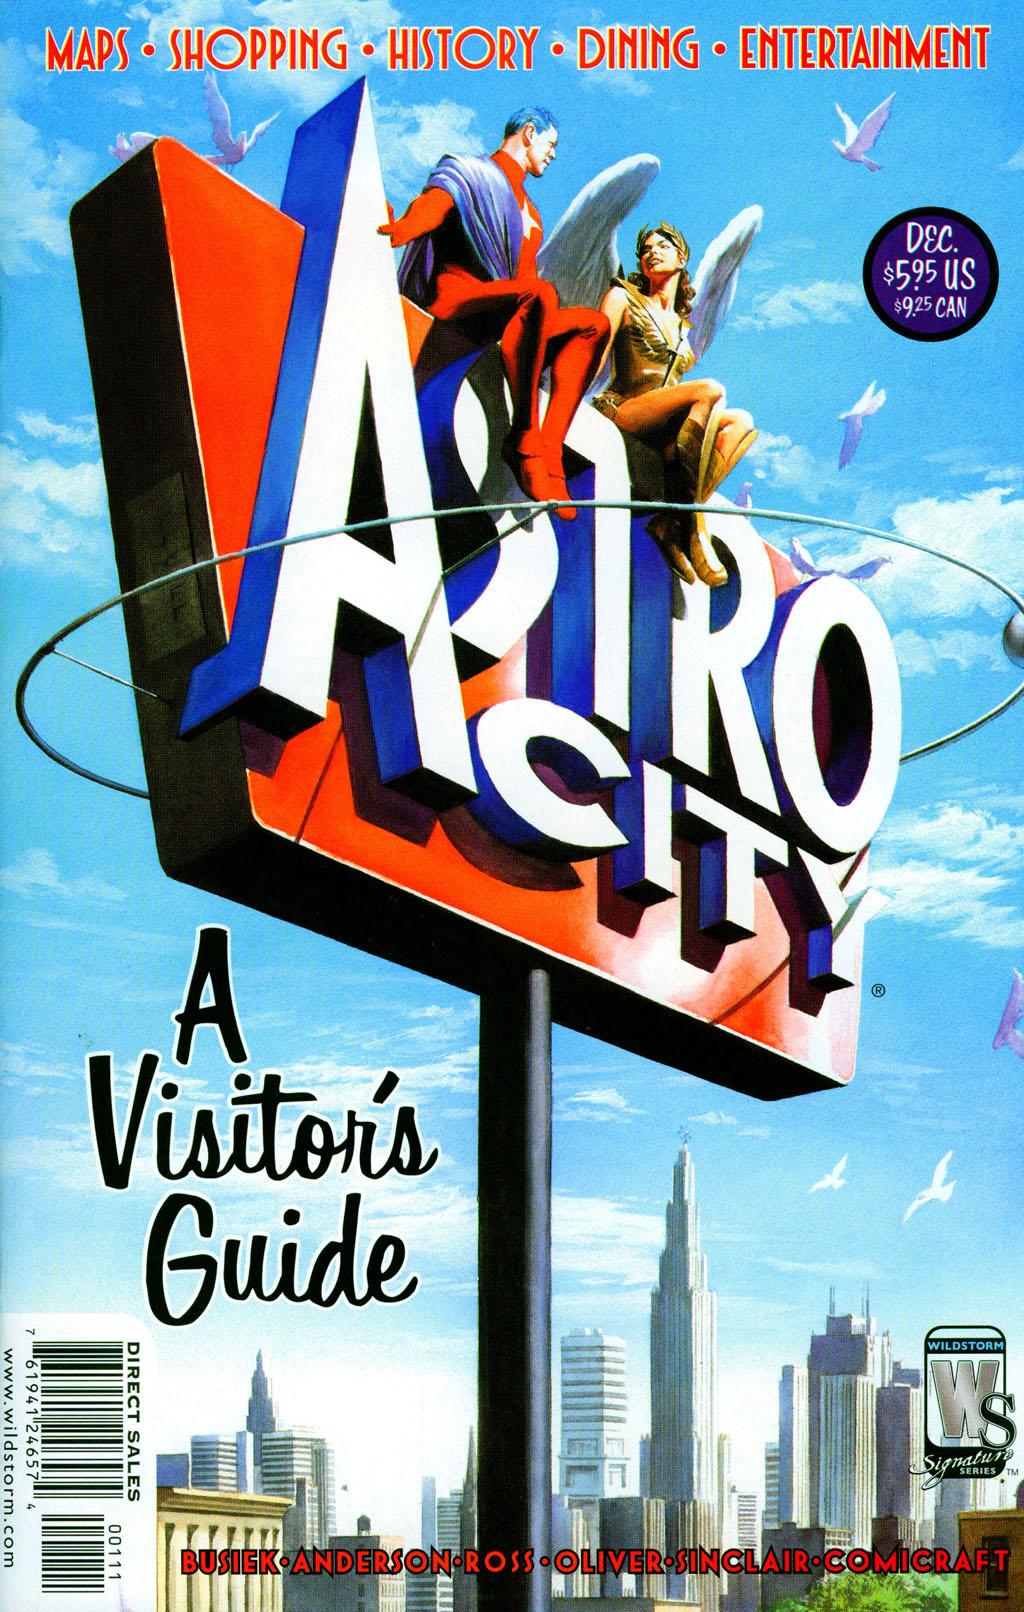 Astro City #1